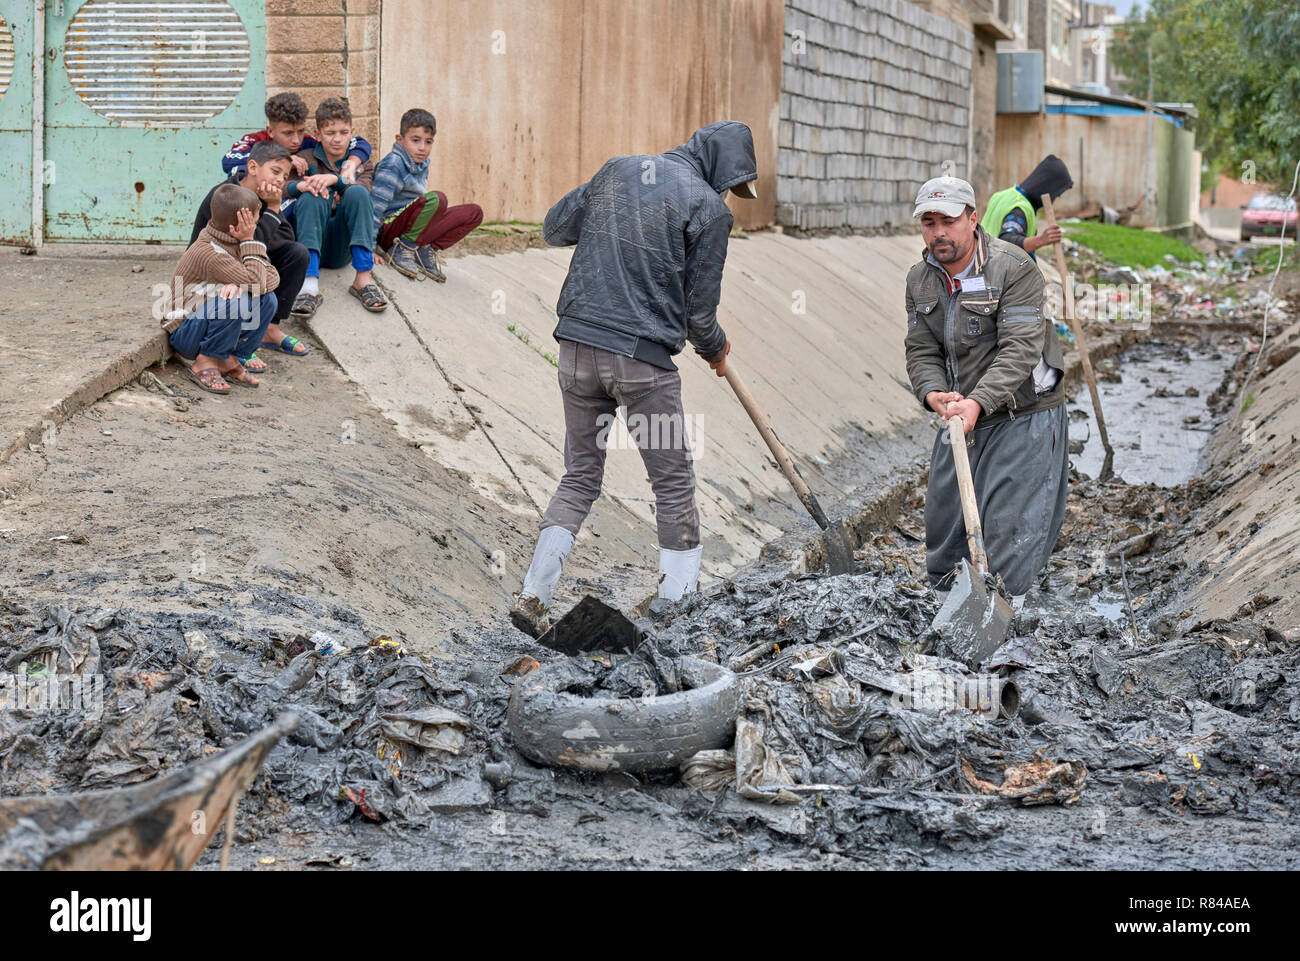 Les résidents de Mosul, Iraq, nettoyer un fossé de drainage dans la partie est de la ville. Ils participent à un programme de travail rémunéré. Banque D'Images